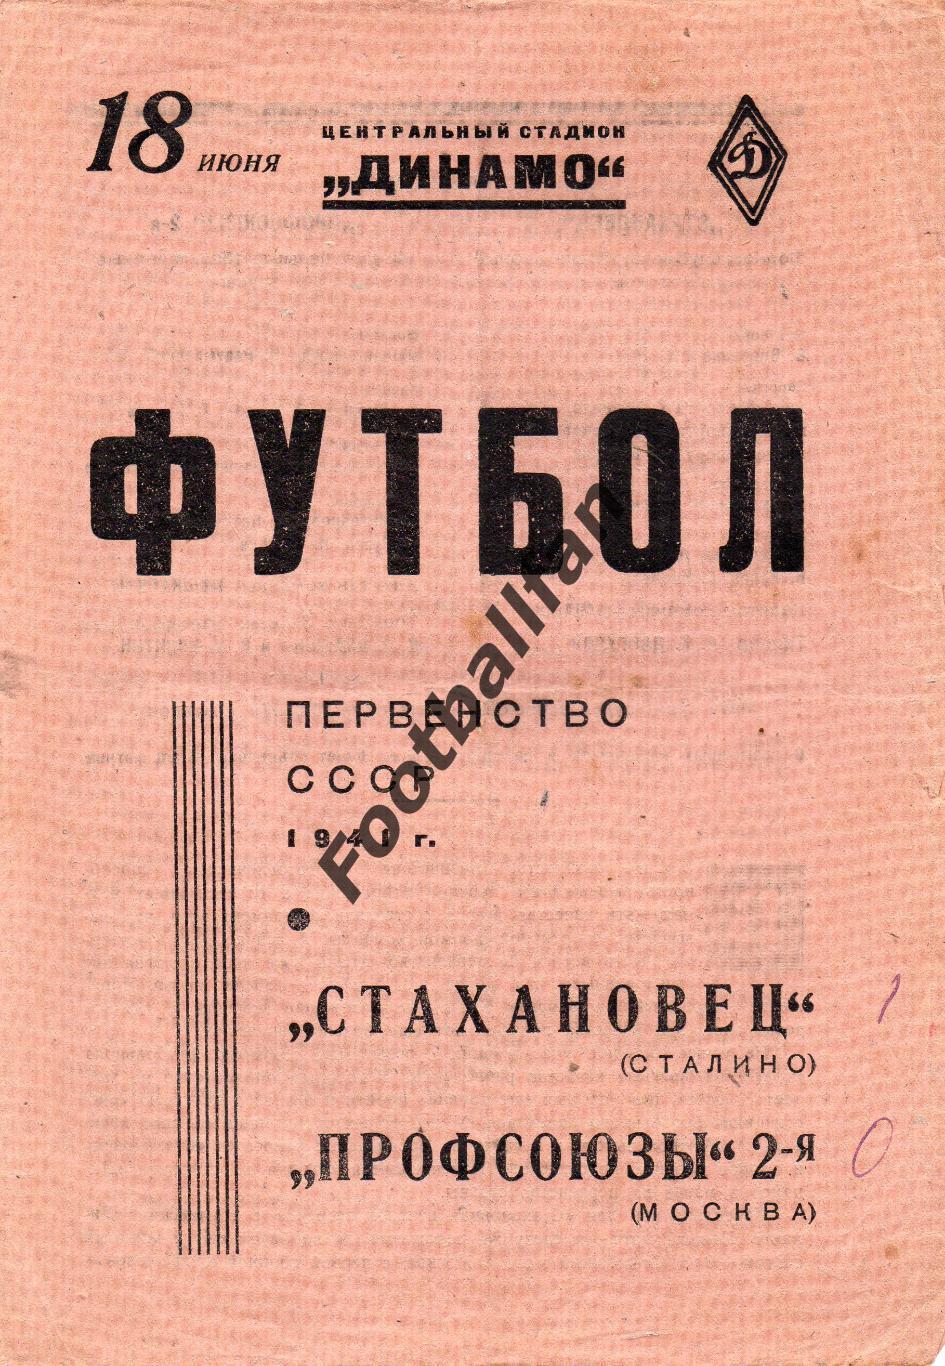 Профсоюзы -2 Москва - Стахановец Сталино ( Донецк ) 18.06.1941